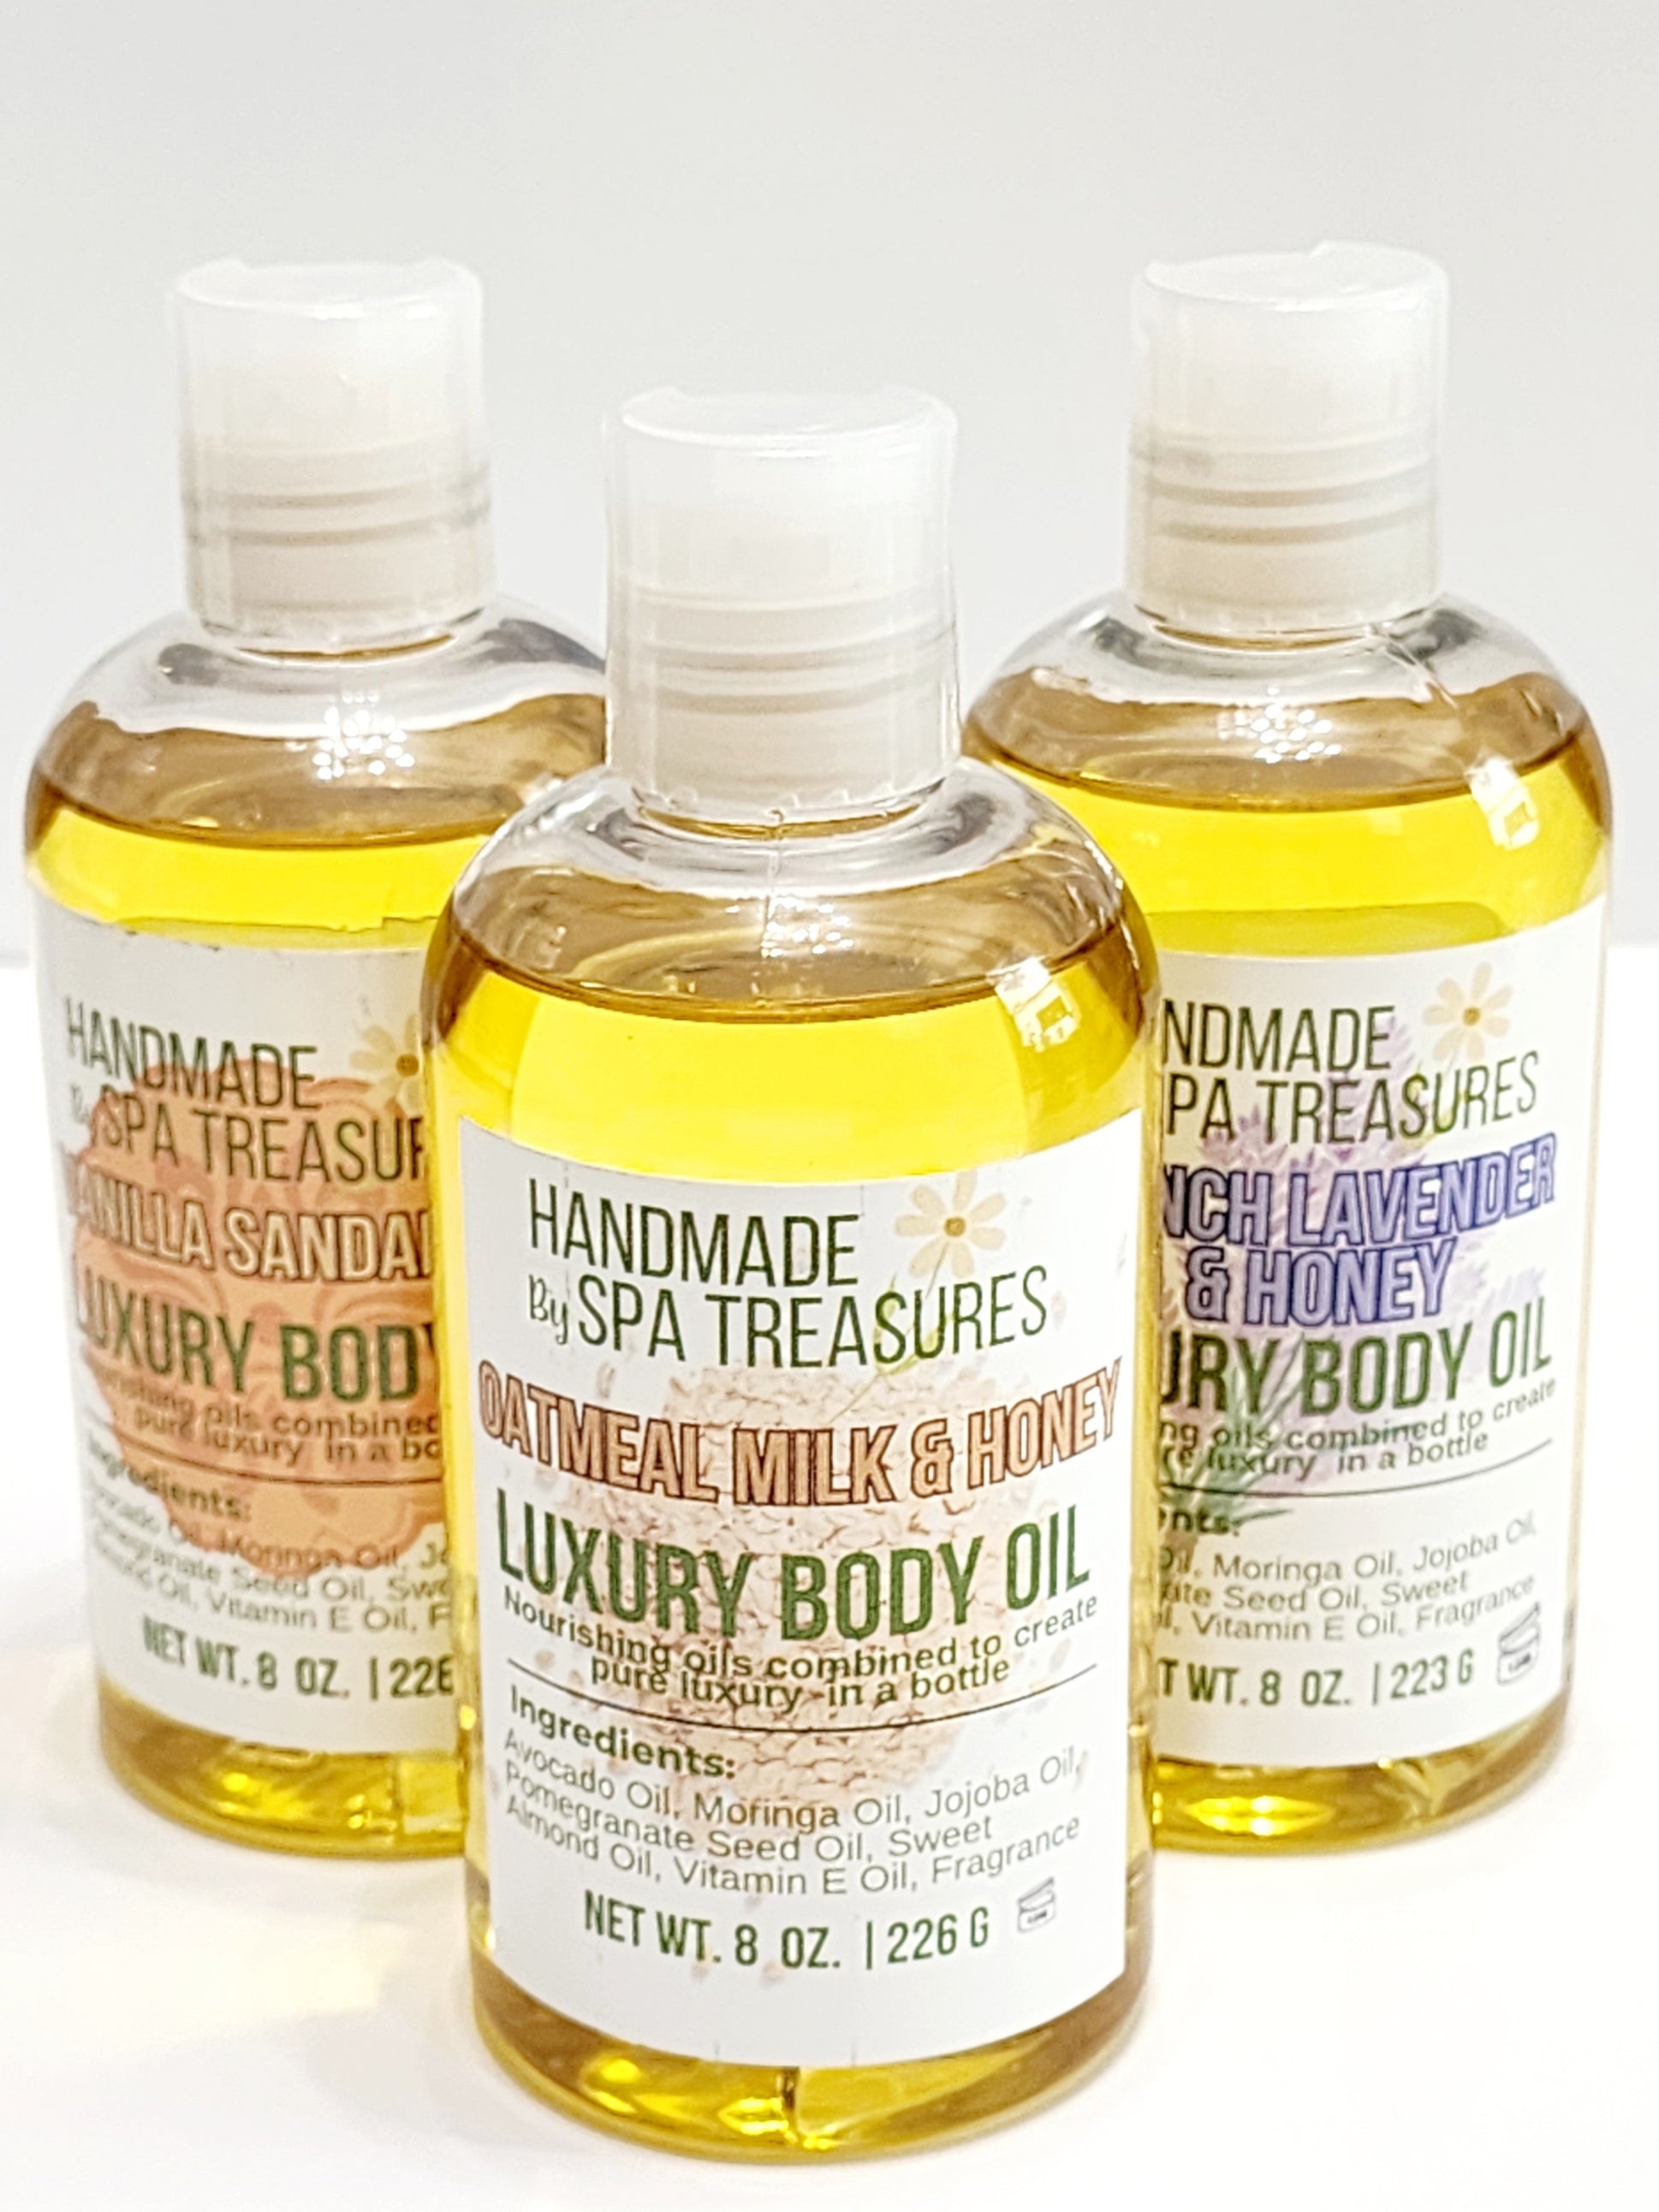 After Bath ~luxurious blended body oil - Oyin Handmade, body oil 